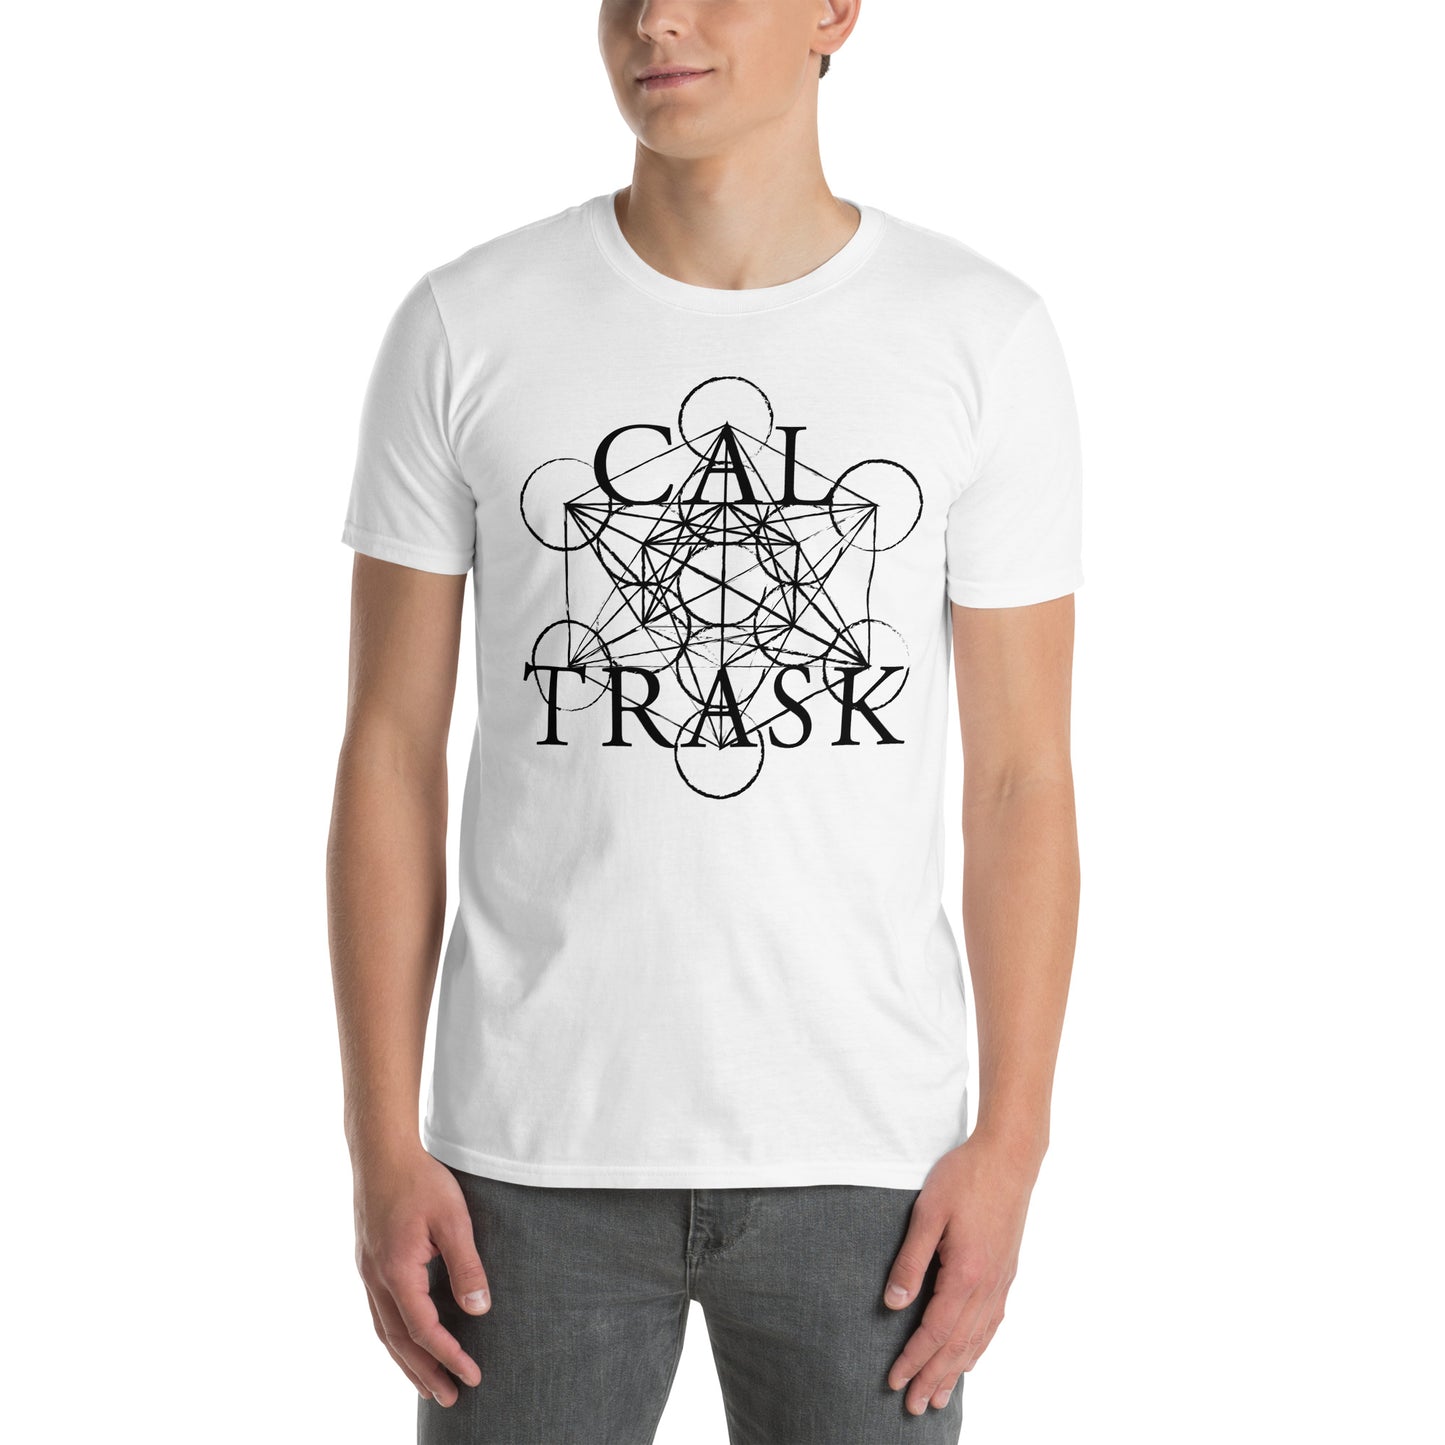 "Cal Trask" Logo Short-Sleeve Unisex T-Shirt